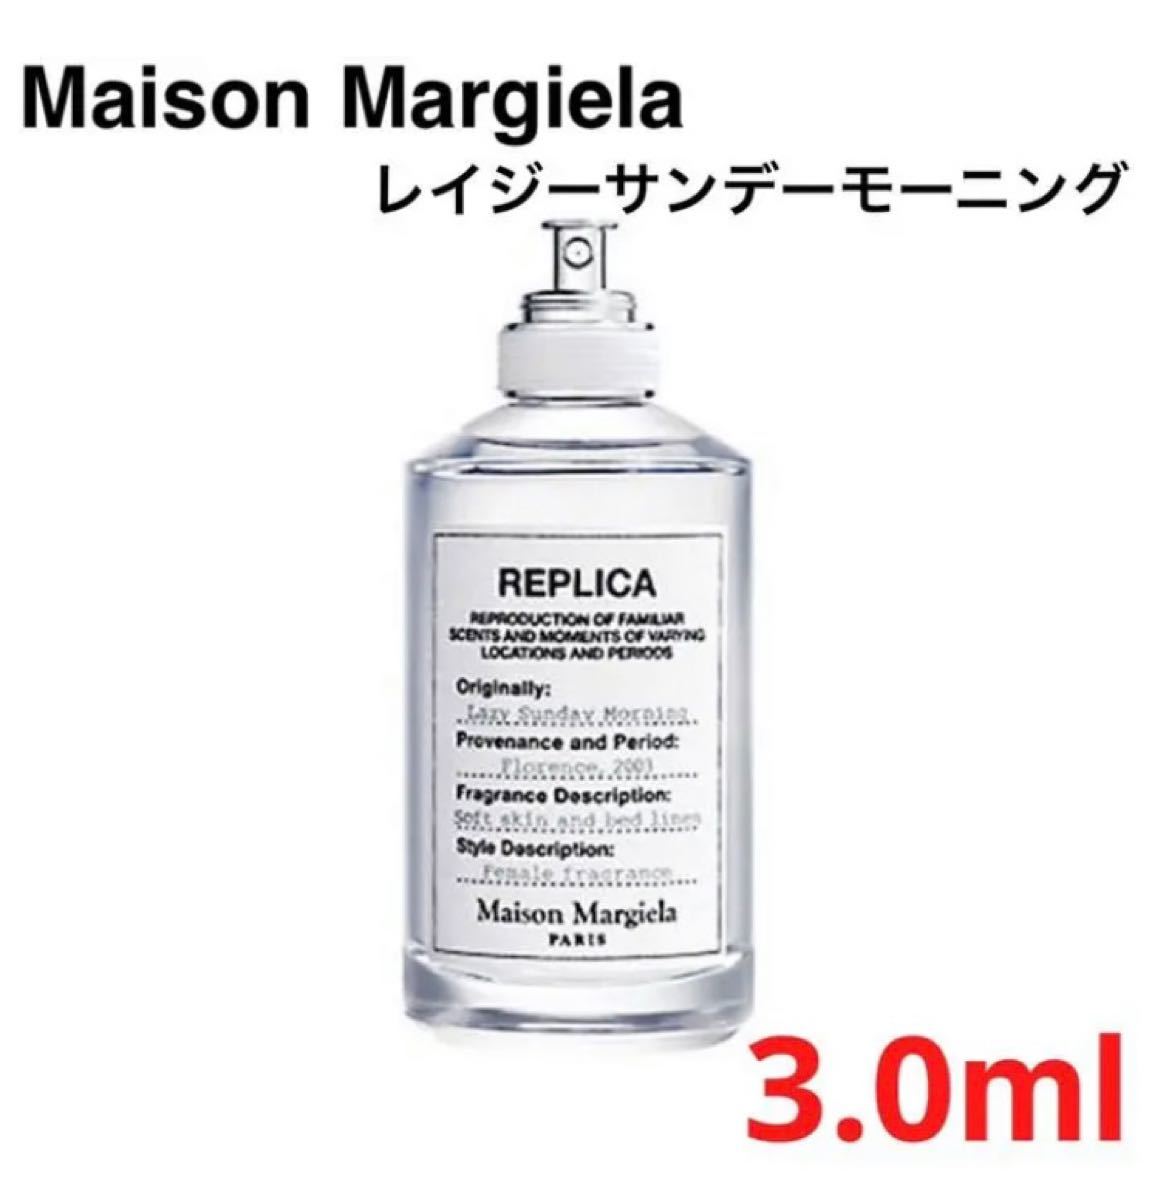 61%OFF!】 お試し1.5ml Maison Margiela フラワーマーケット